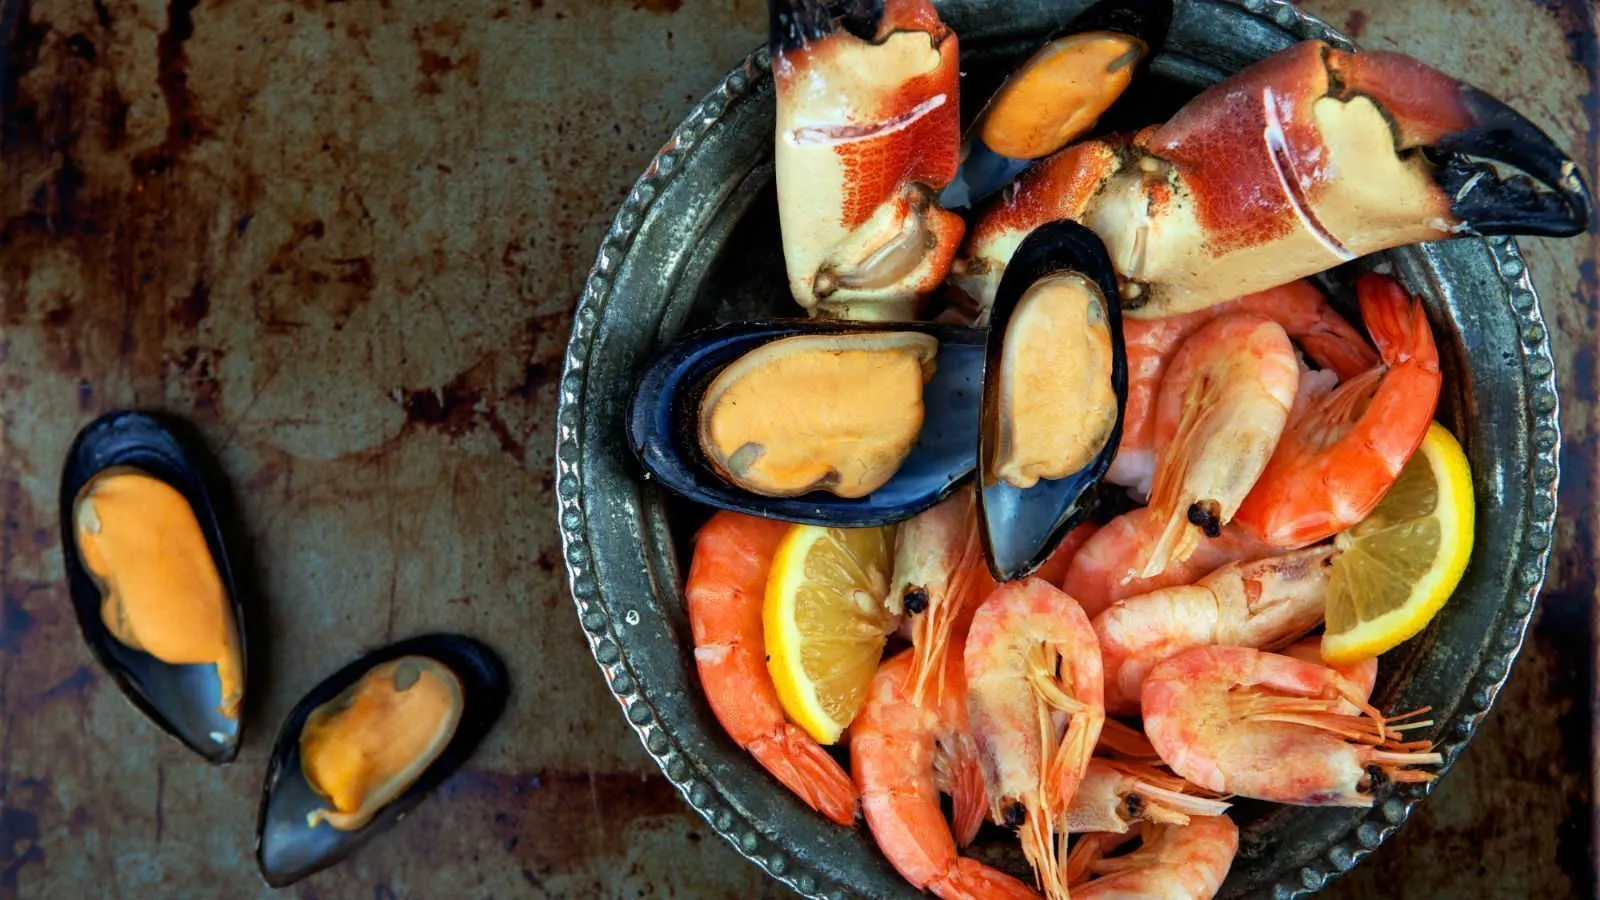 Os frutos do mar são, muitas vezes, considerados vilões na cozinha. Quer aprender a prepará-los com facilidade? Então confira nossas dicas no Amo KitchenAid: